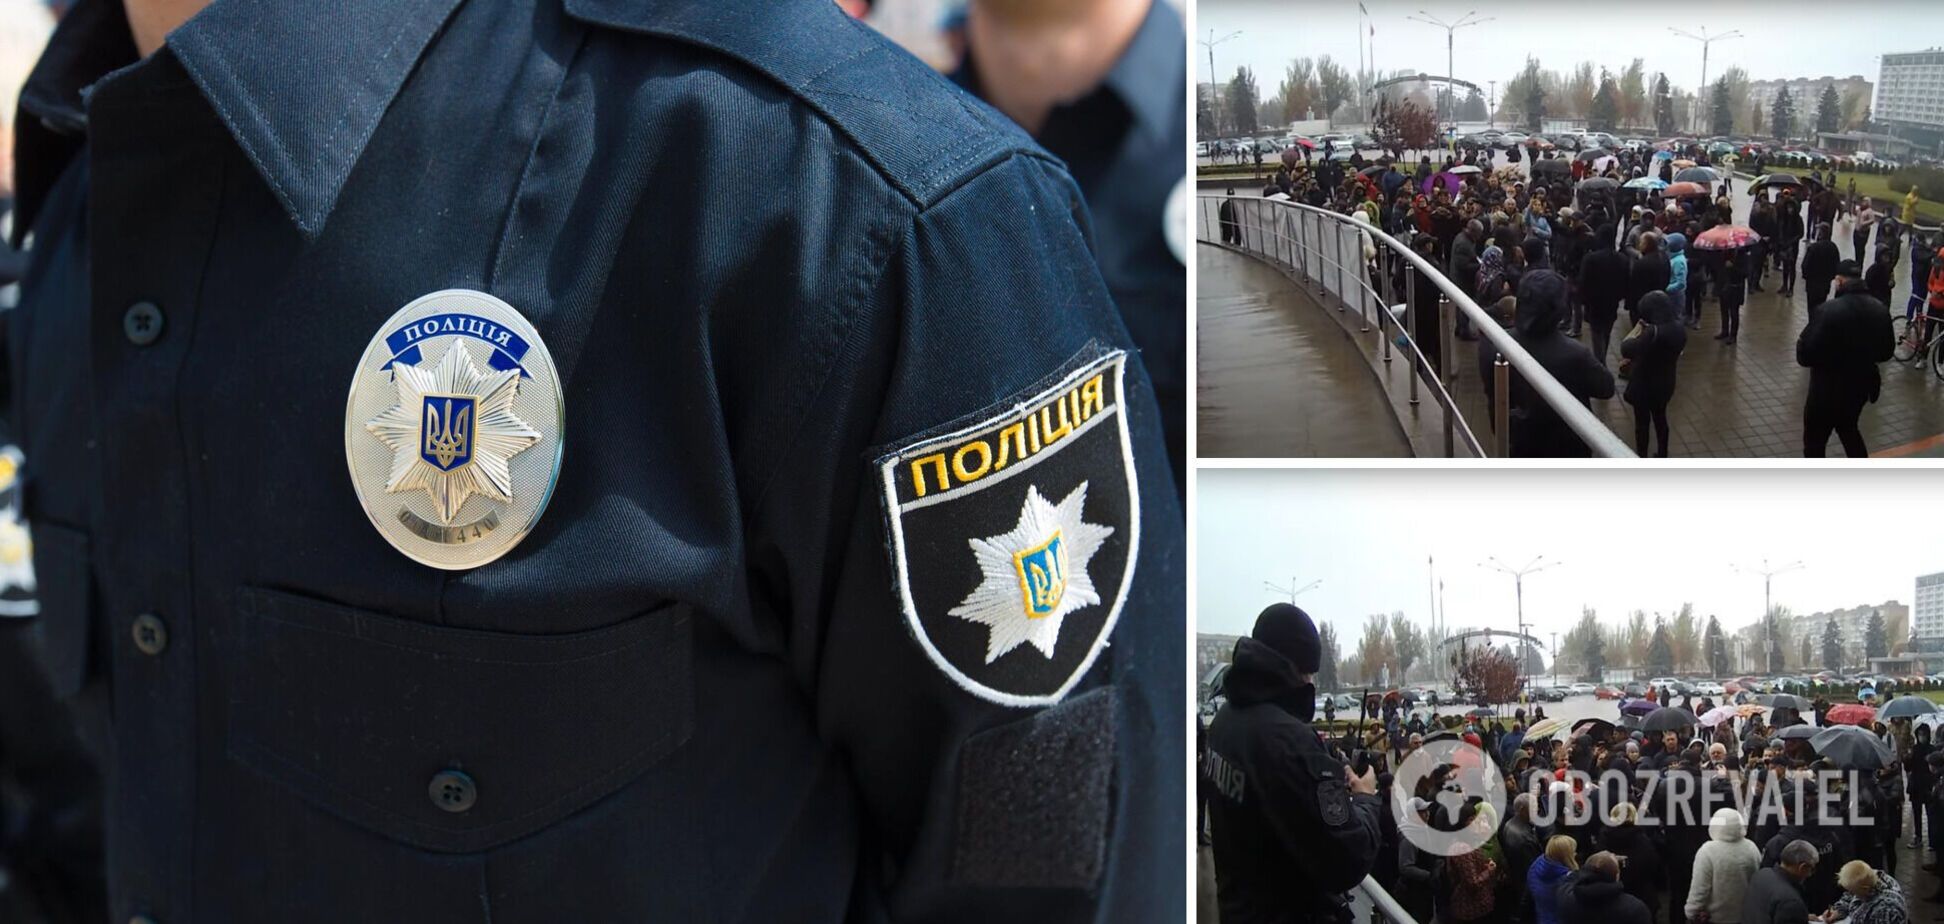 В Запорожье на митинге антивакцинаторов пострадал человек, полиция задержала пятерых участников. Видео